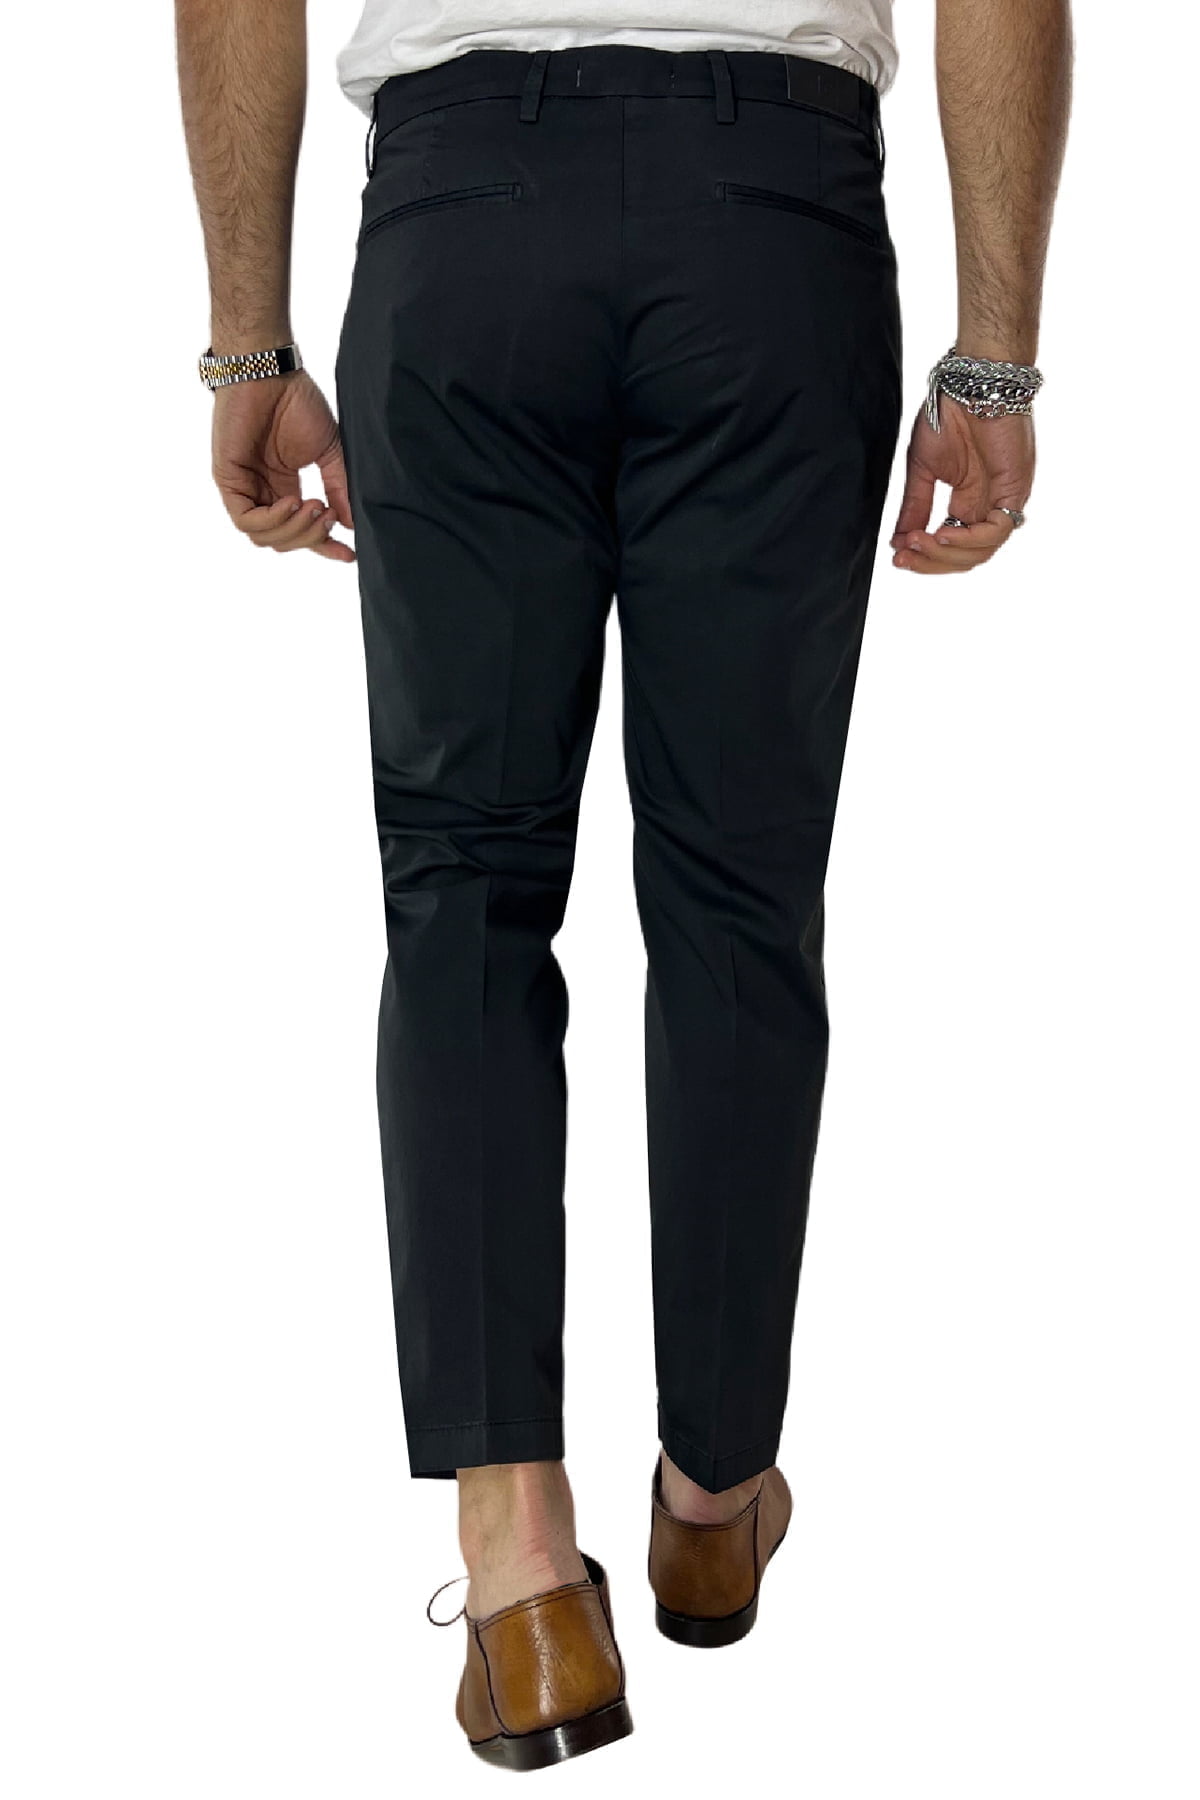 Pantalone uomo nero in Cotone tasca america leggermente elastico estivo